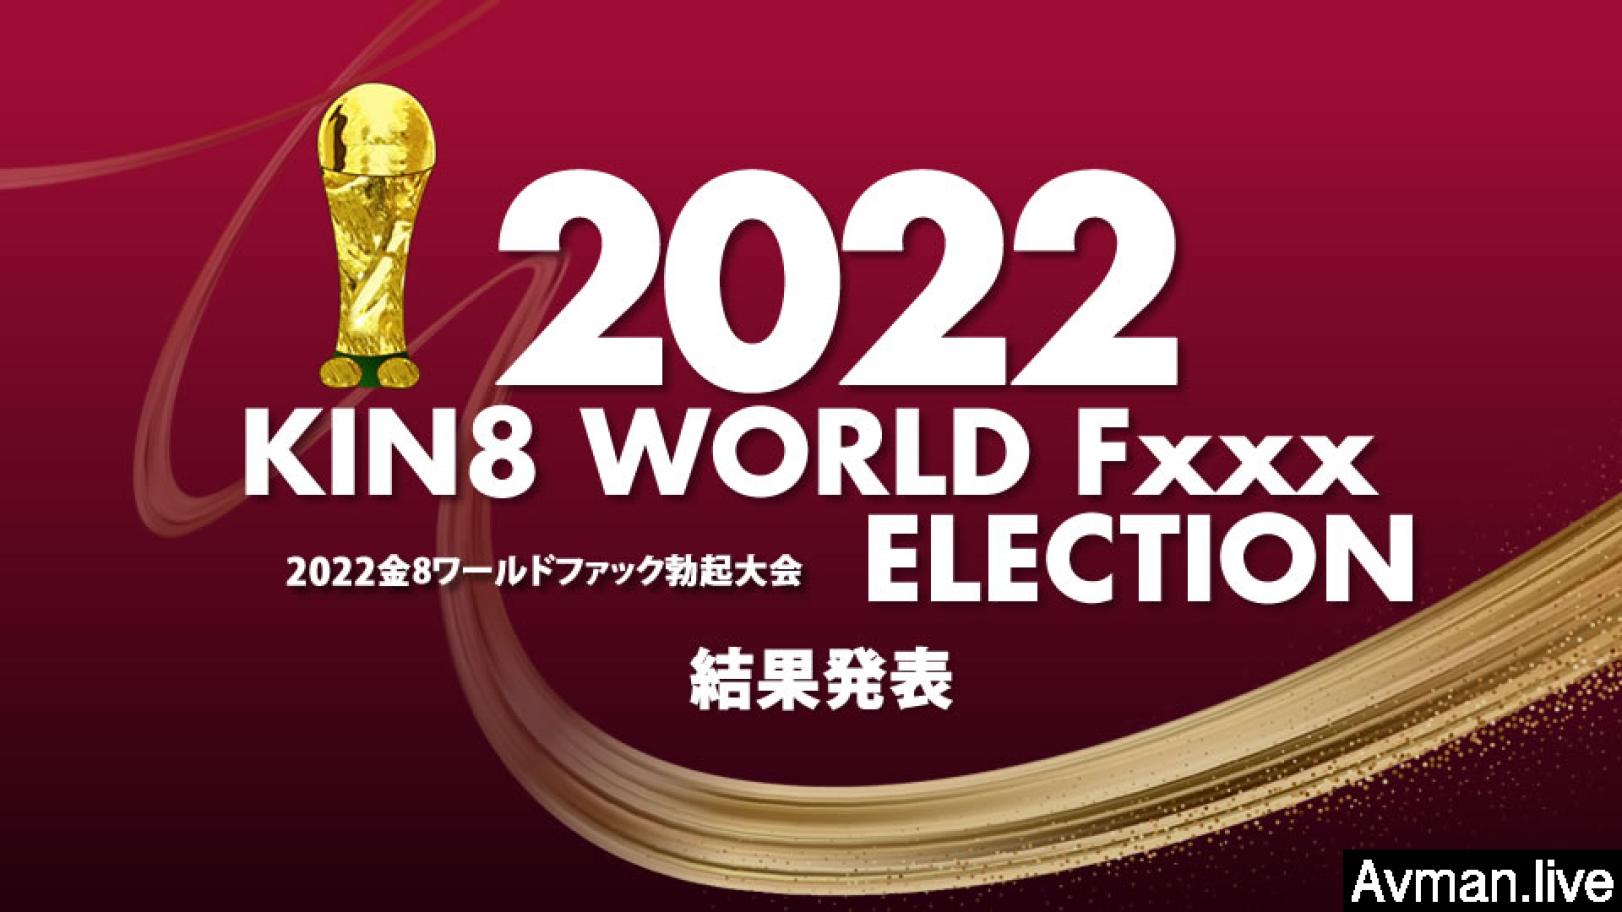 2022 KIN8 WORLD Fxxx ELECTION 結果発表 #